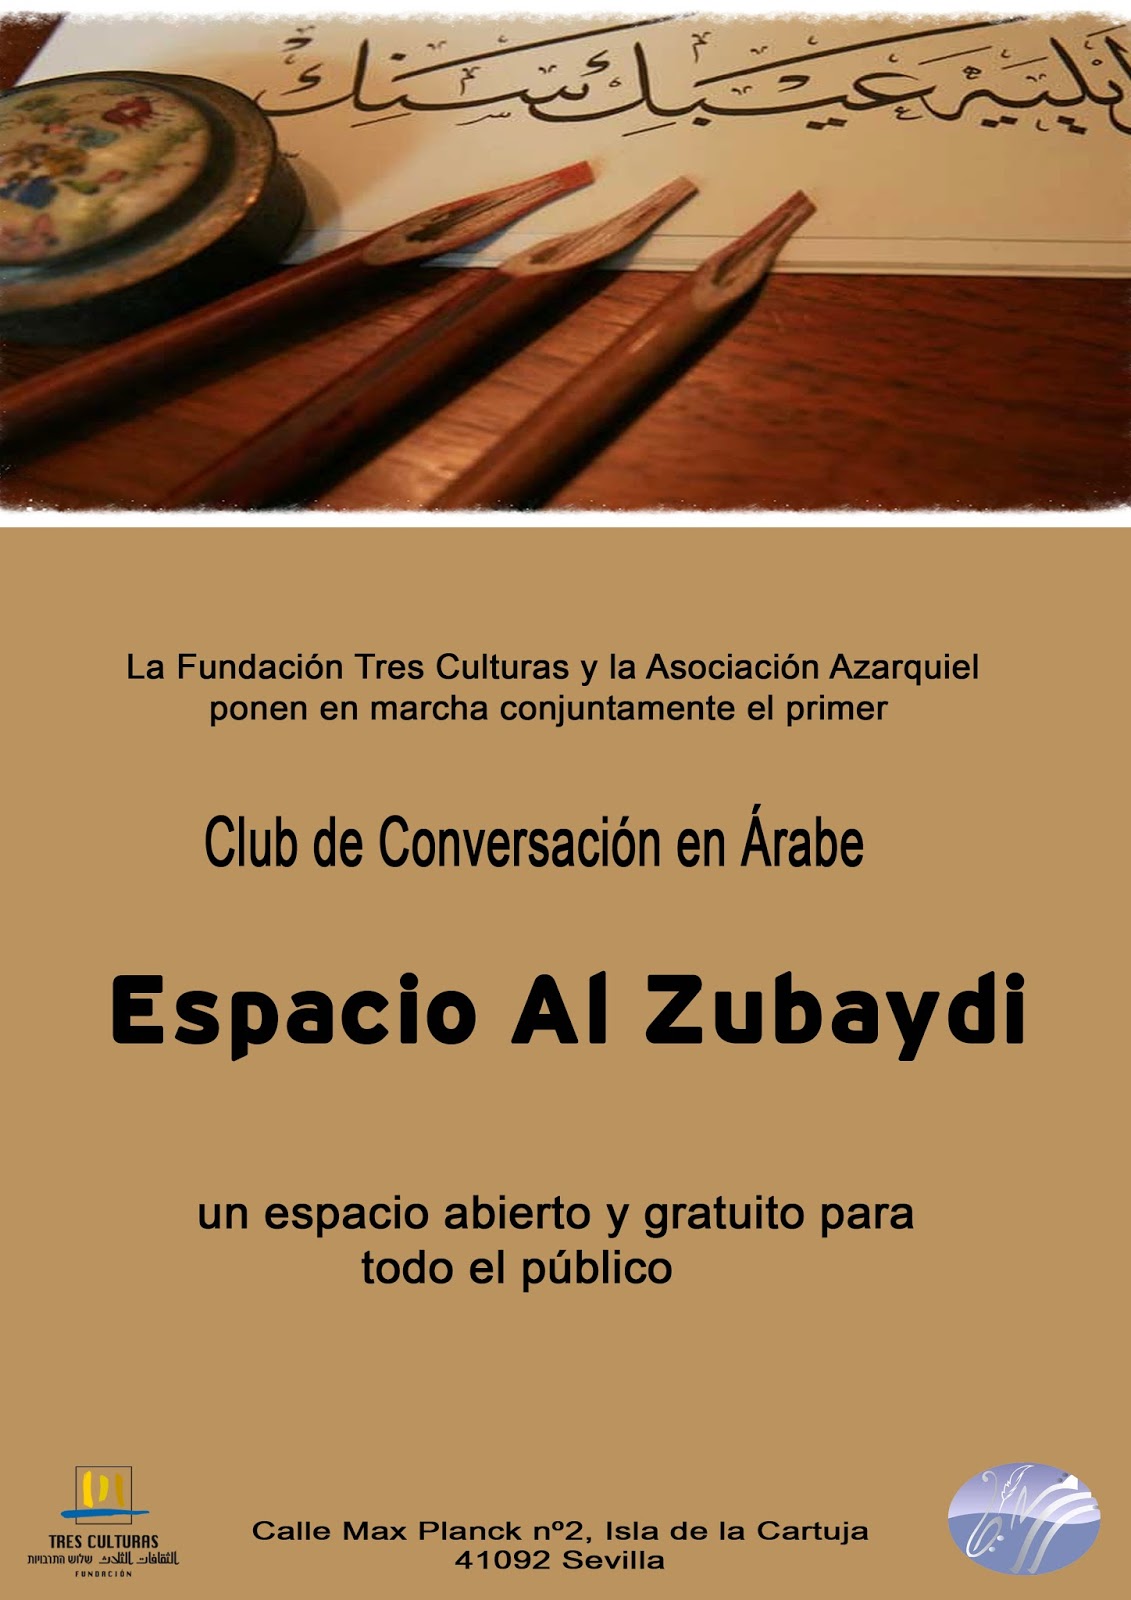 ‘Espacio Al Zubaydi’ club de conversación en árabe